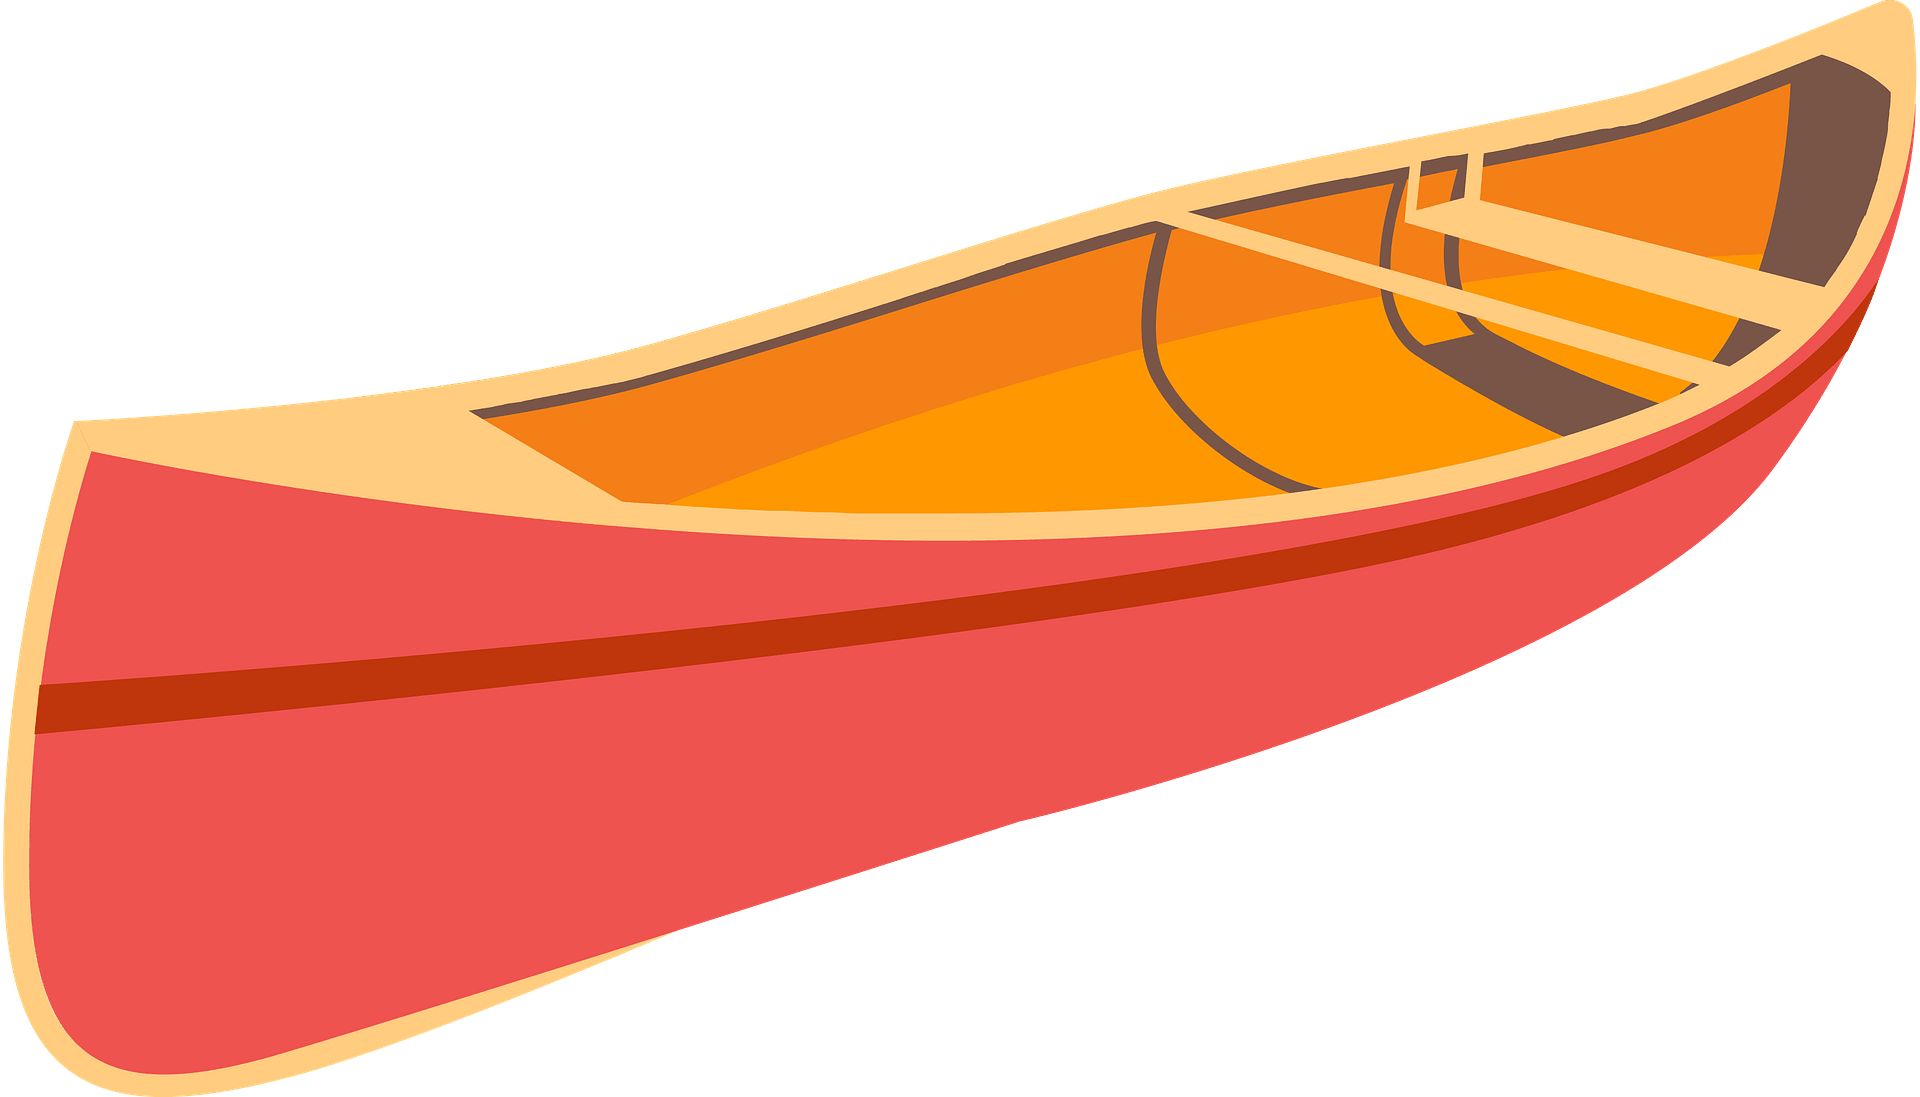 Red Canoe Illustration